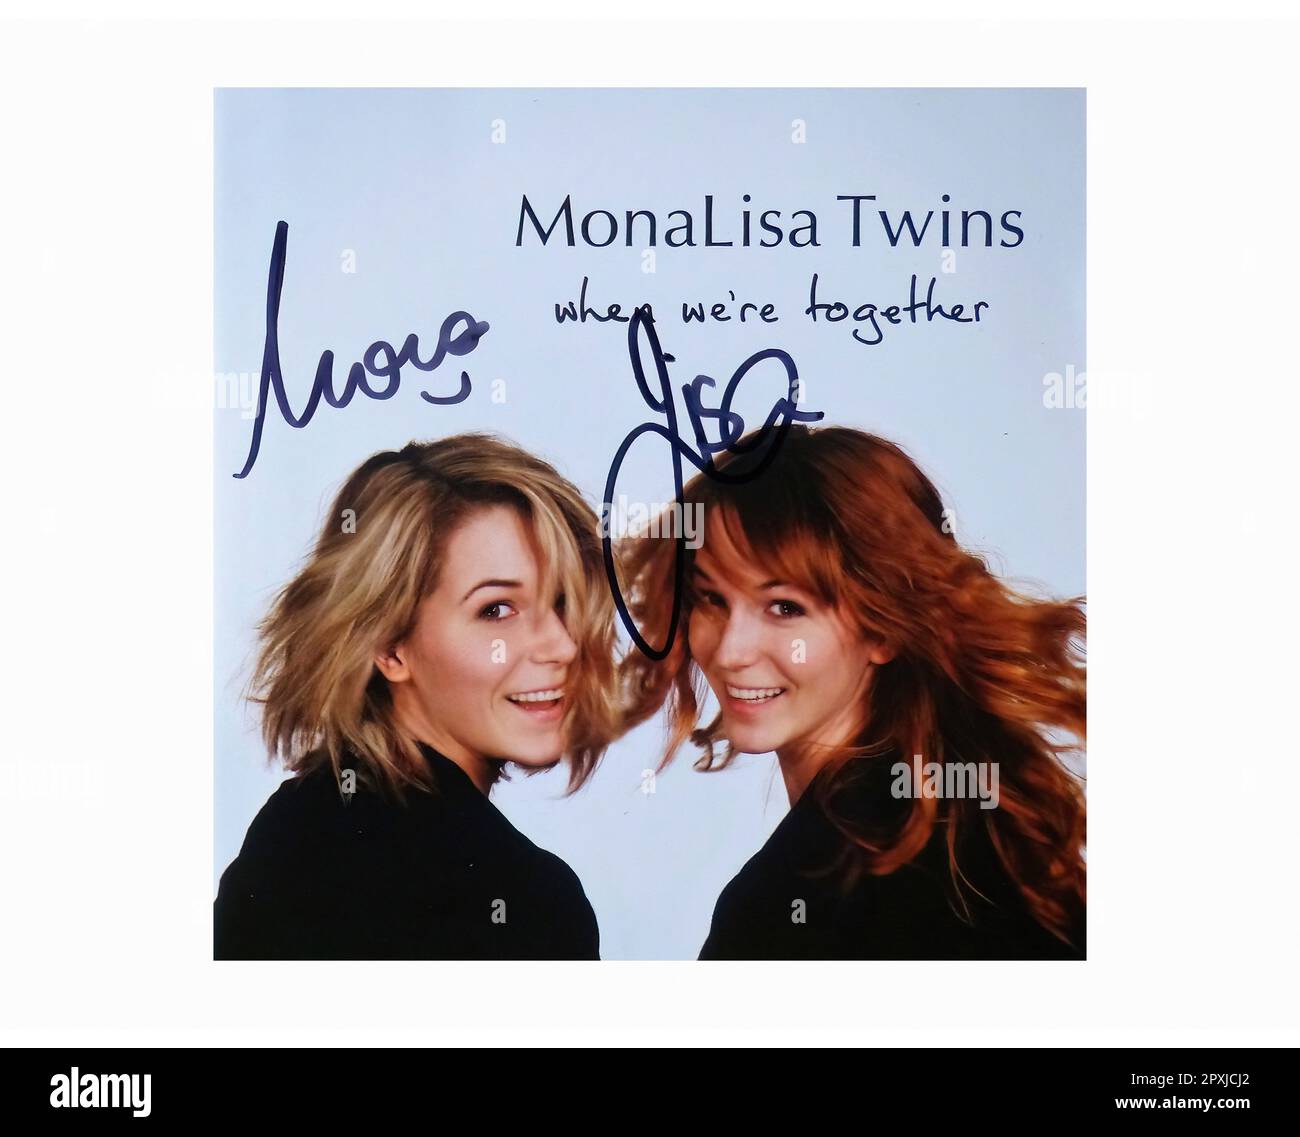 MonaLisa Twins 